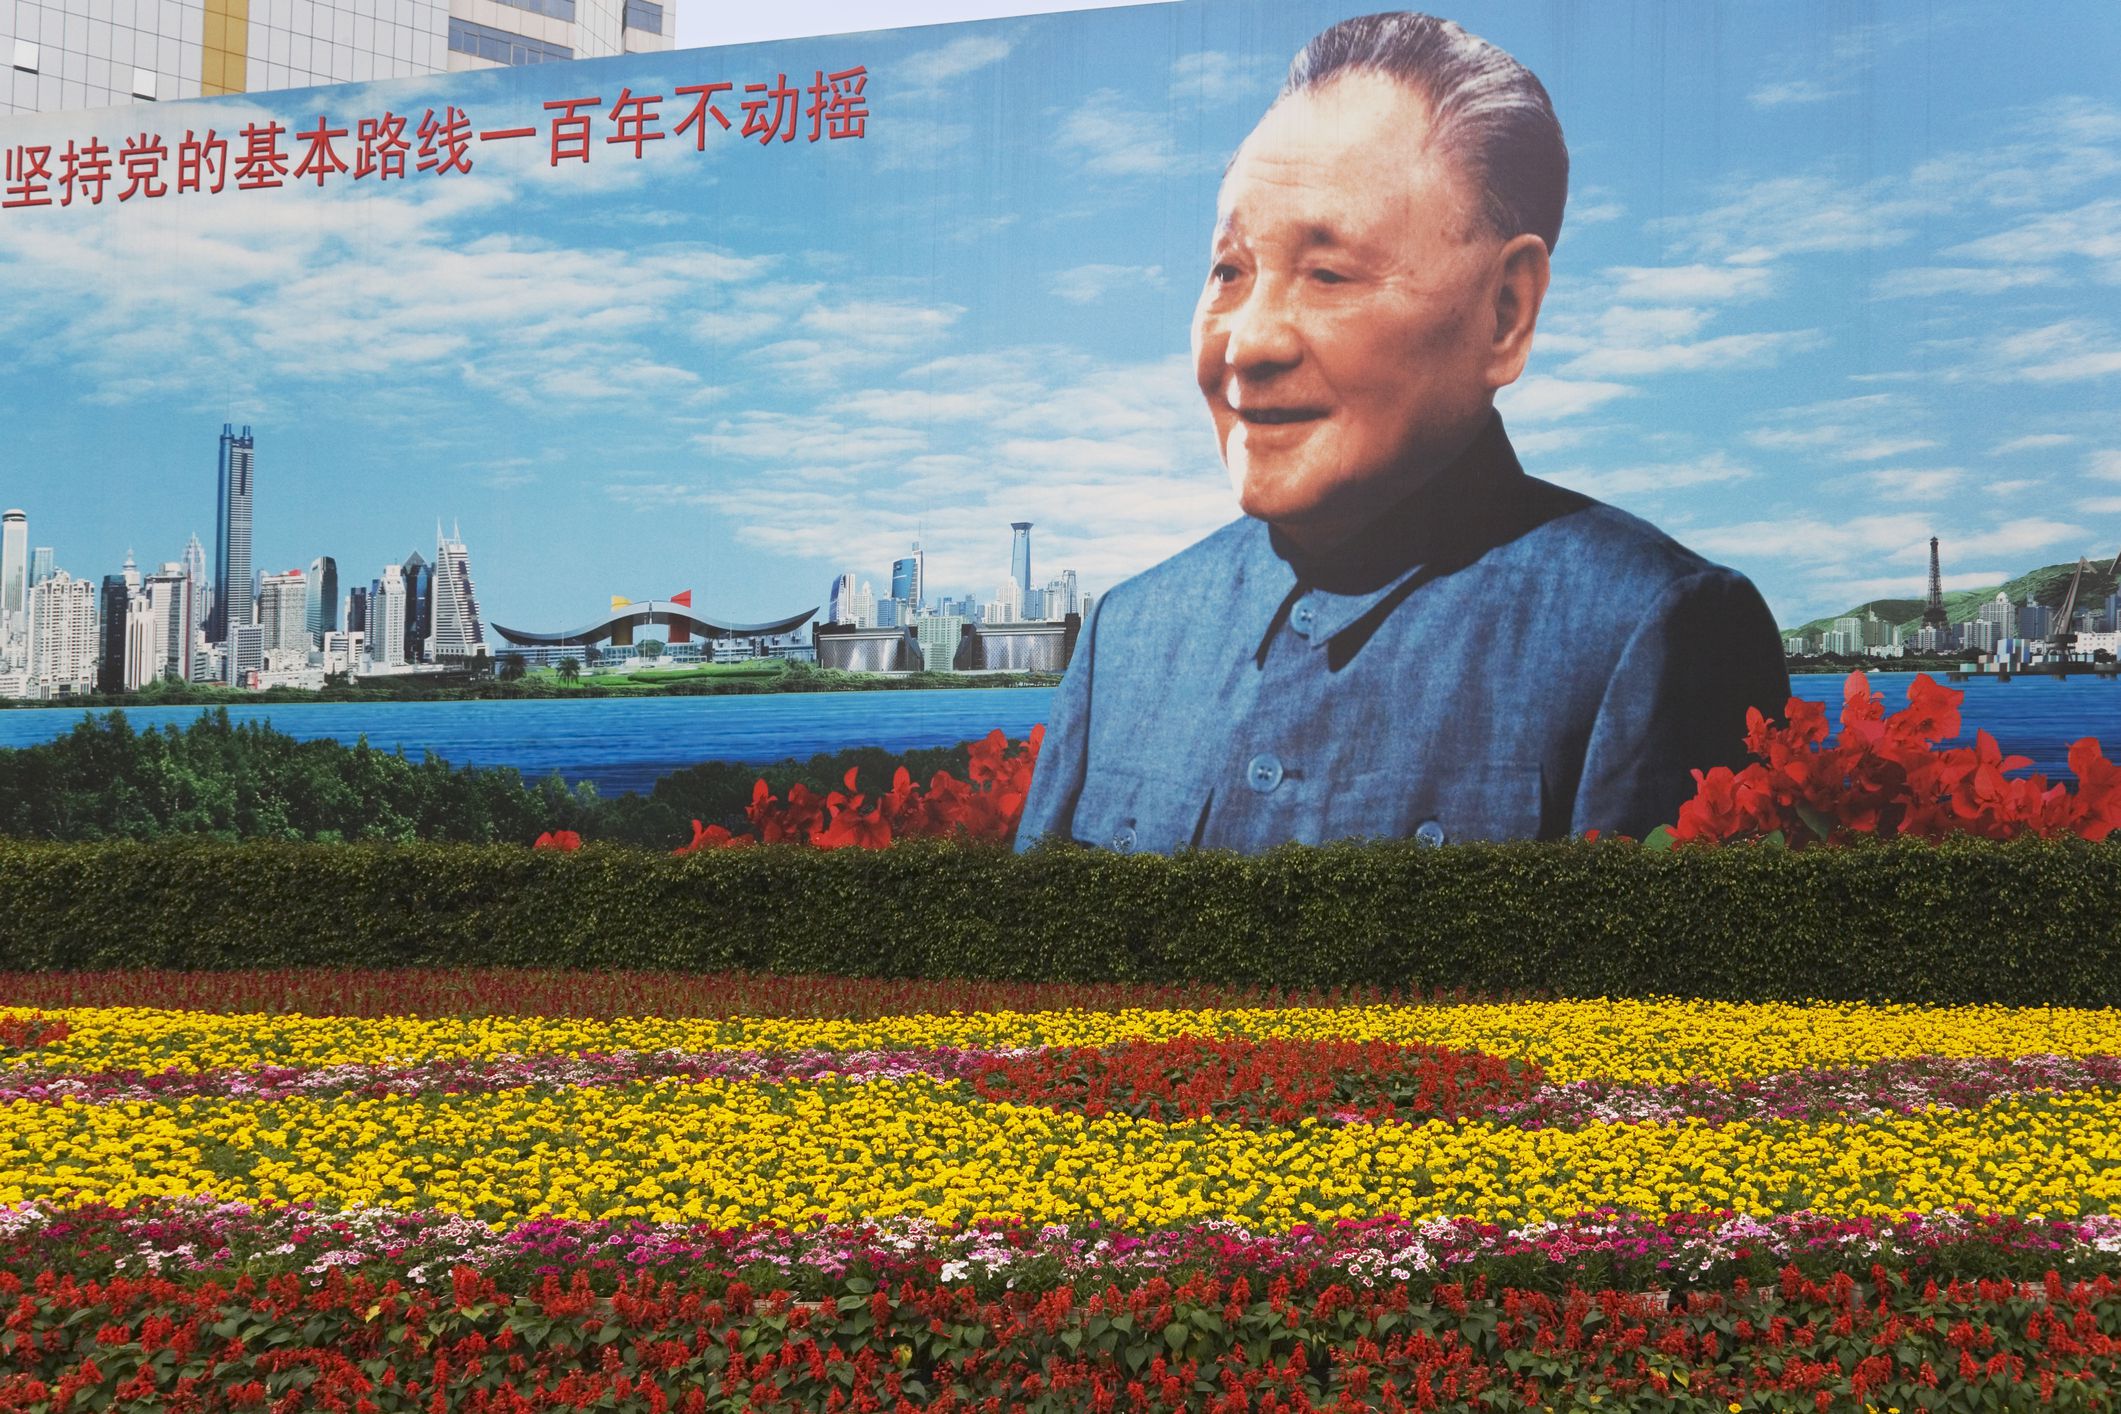 How to pronounce Deng Xiaoping